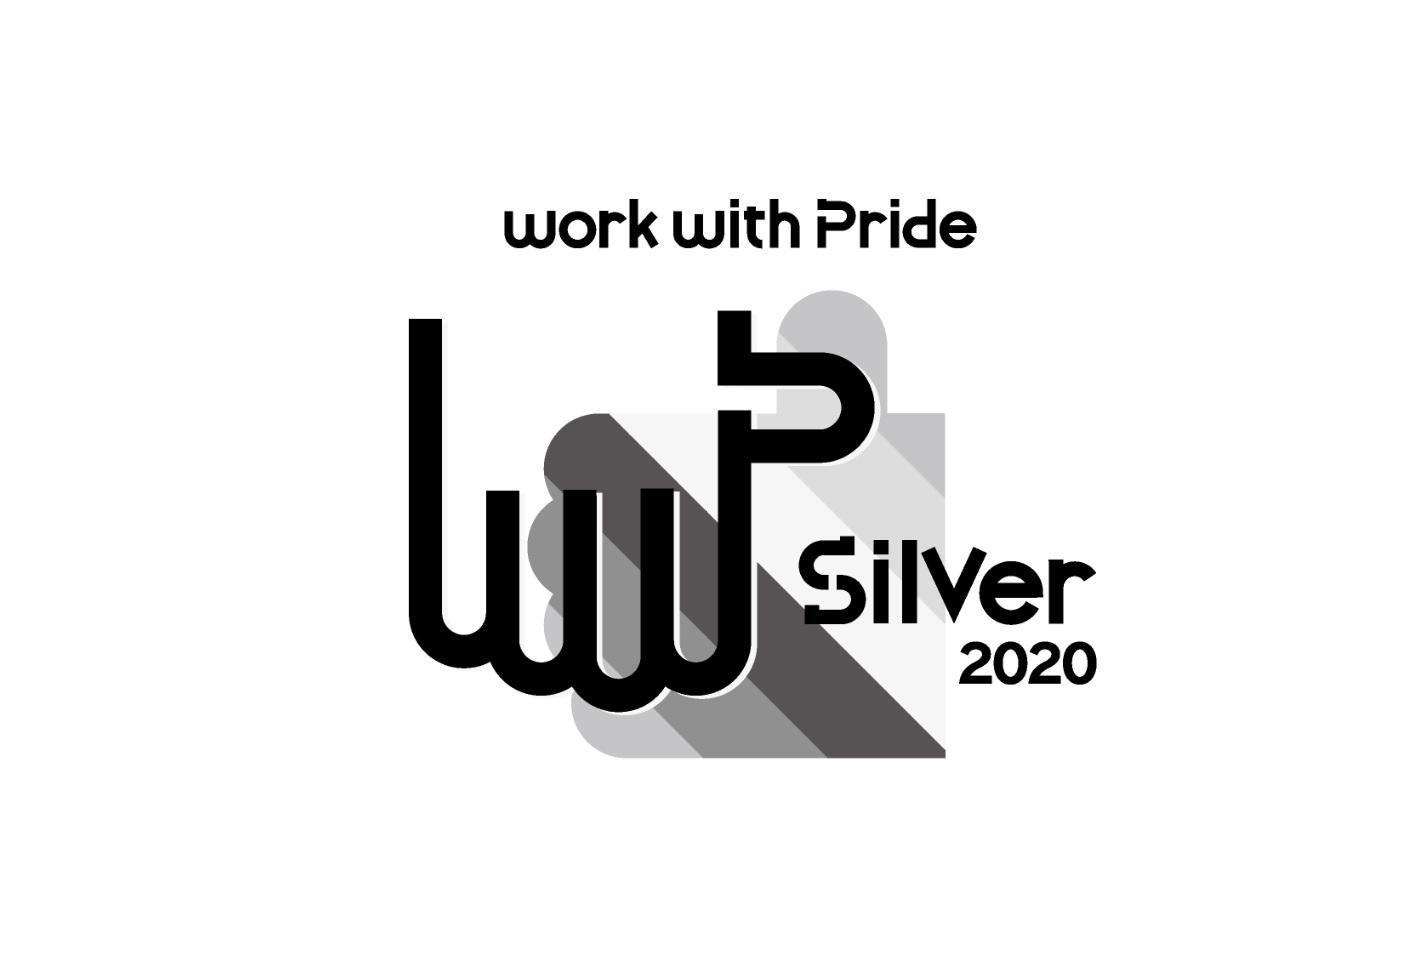 龍谷大学　セクシュアルマイノリティへの取り組みを評価　「work with Pride」の「PRIDE指標2020」においてシルバー評価を2年連続で獲得